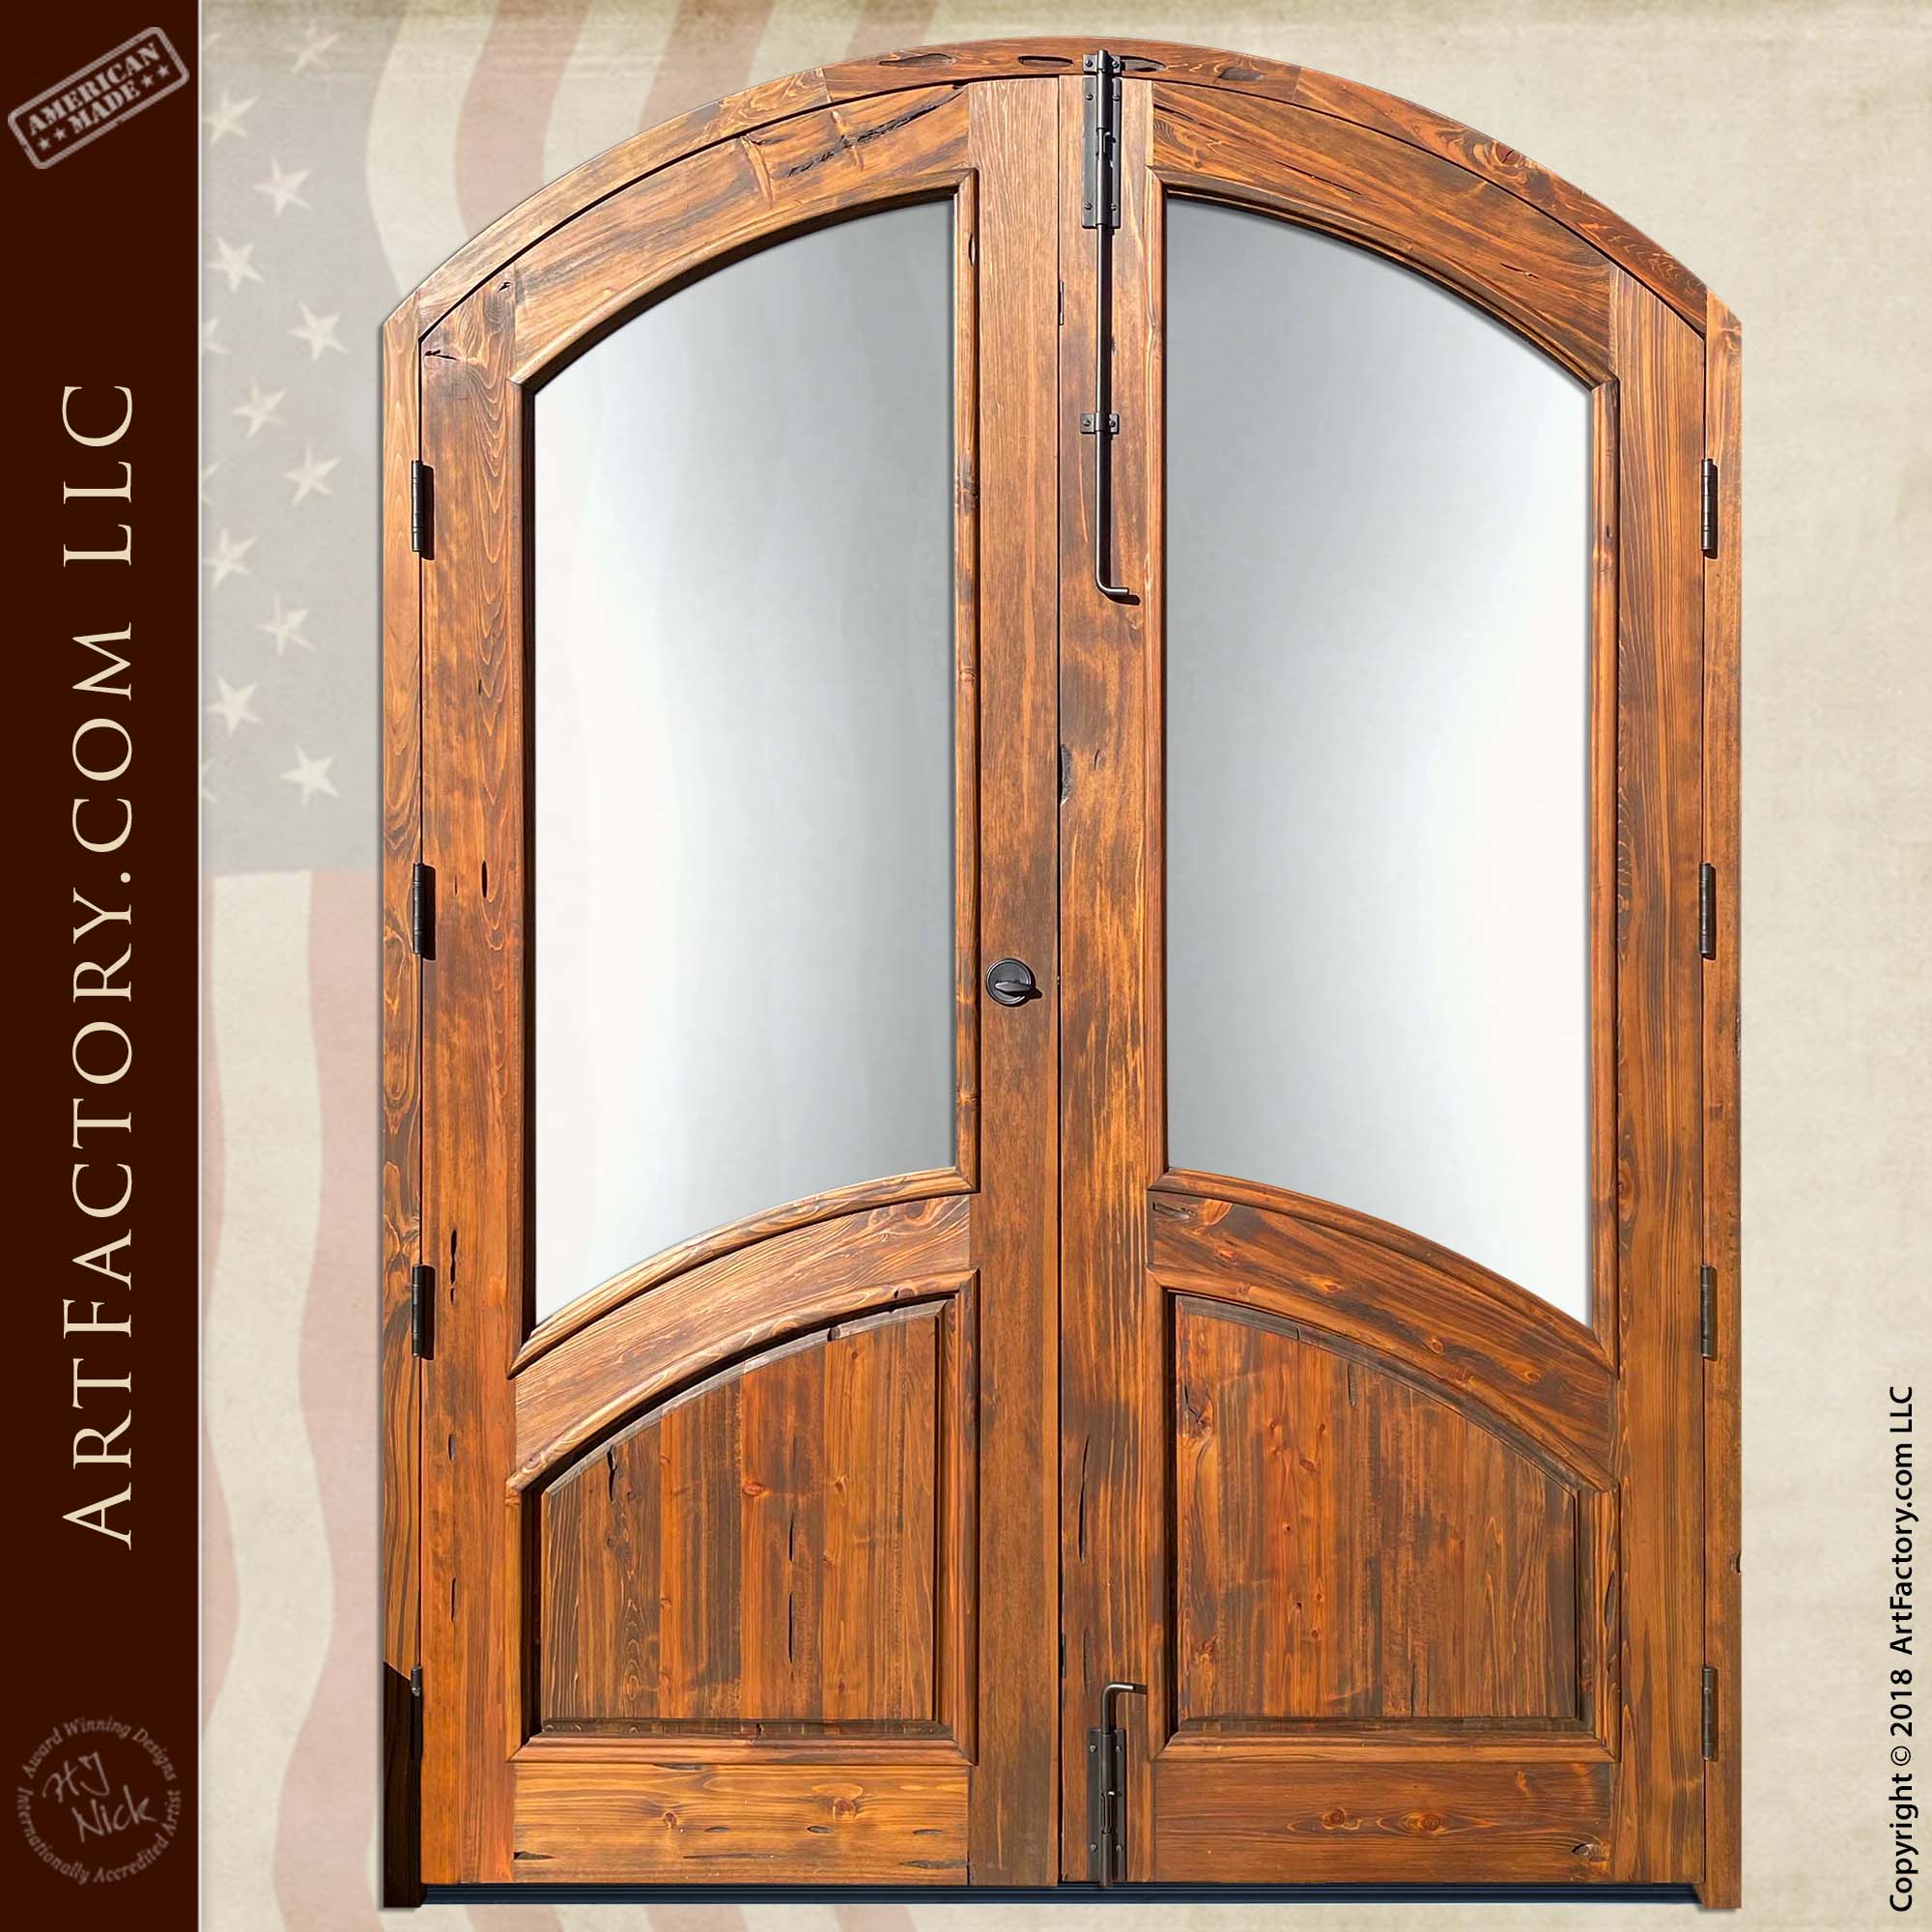 Solid Wood & Iron French Door Design